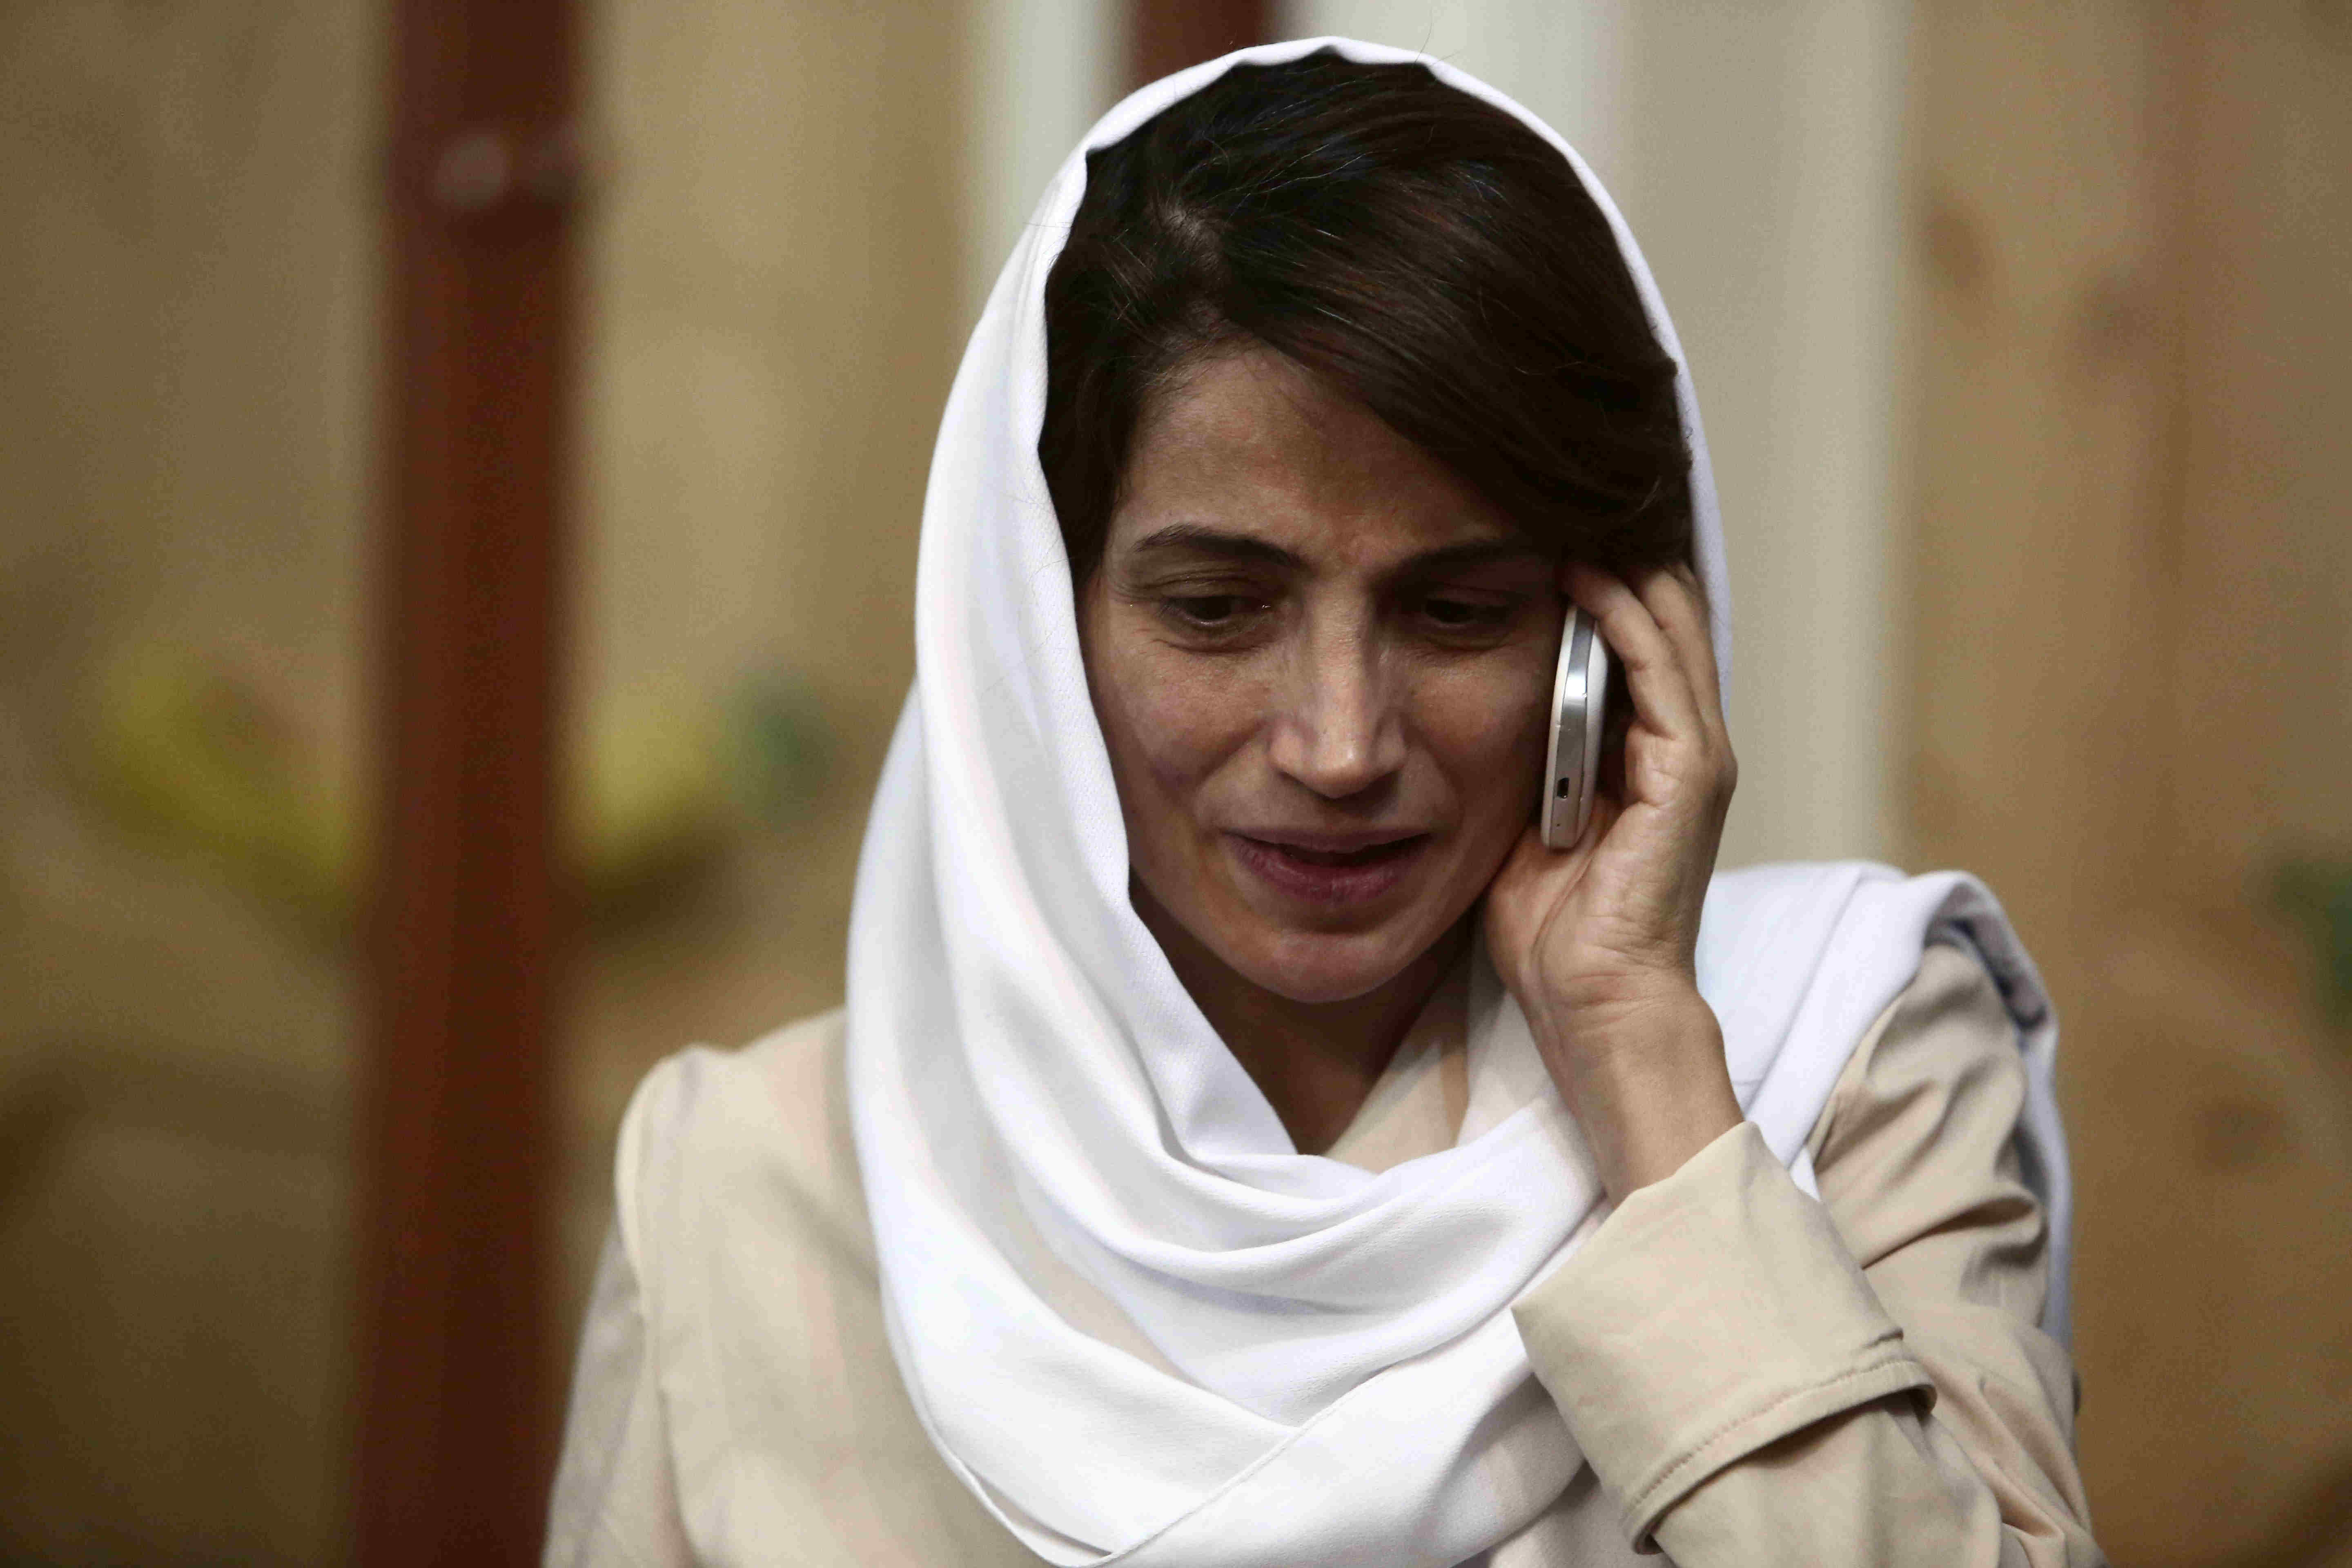 Porträt von Nasrin Sotoudeh mit Kopftuch und Mobiltelefon am Ohr